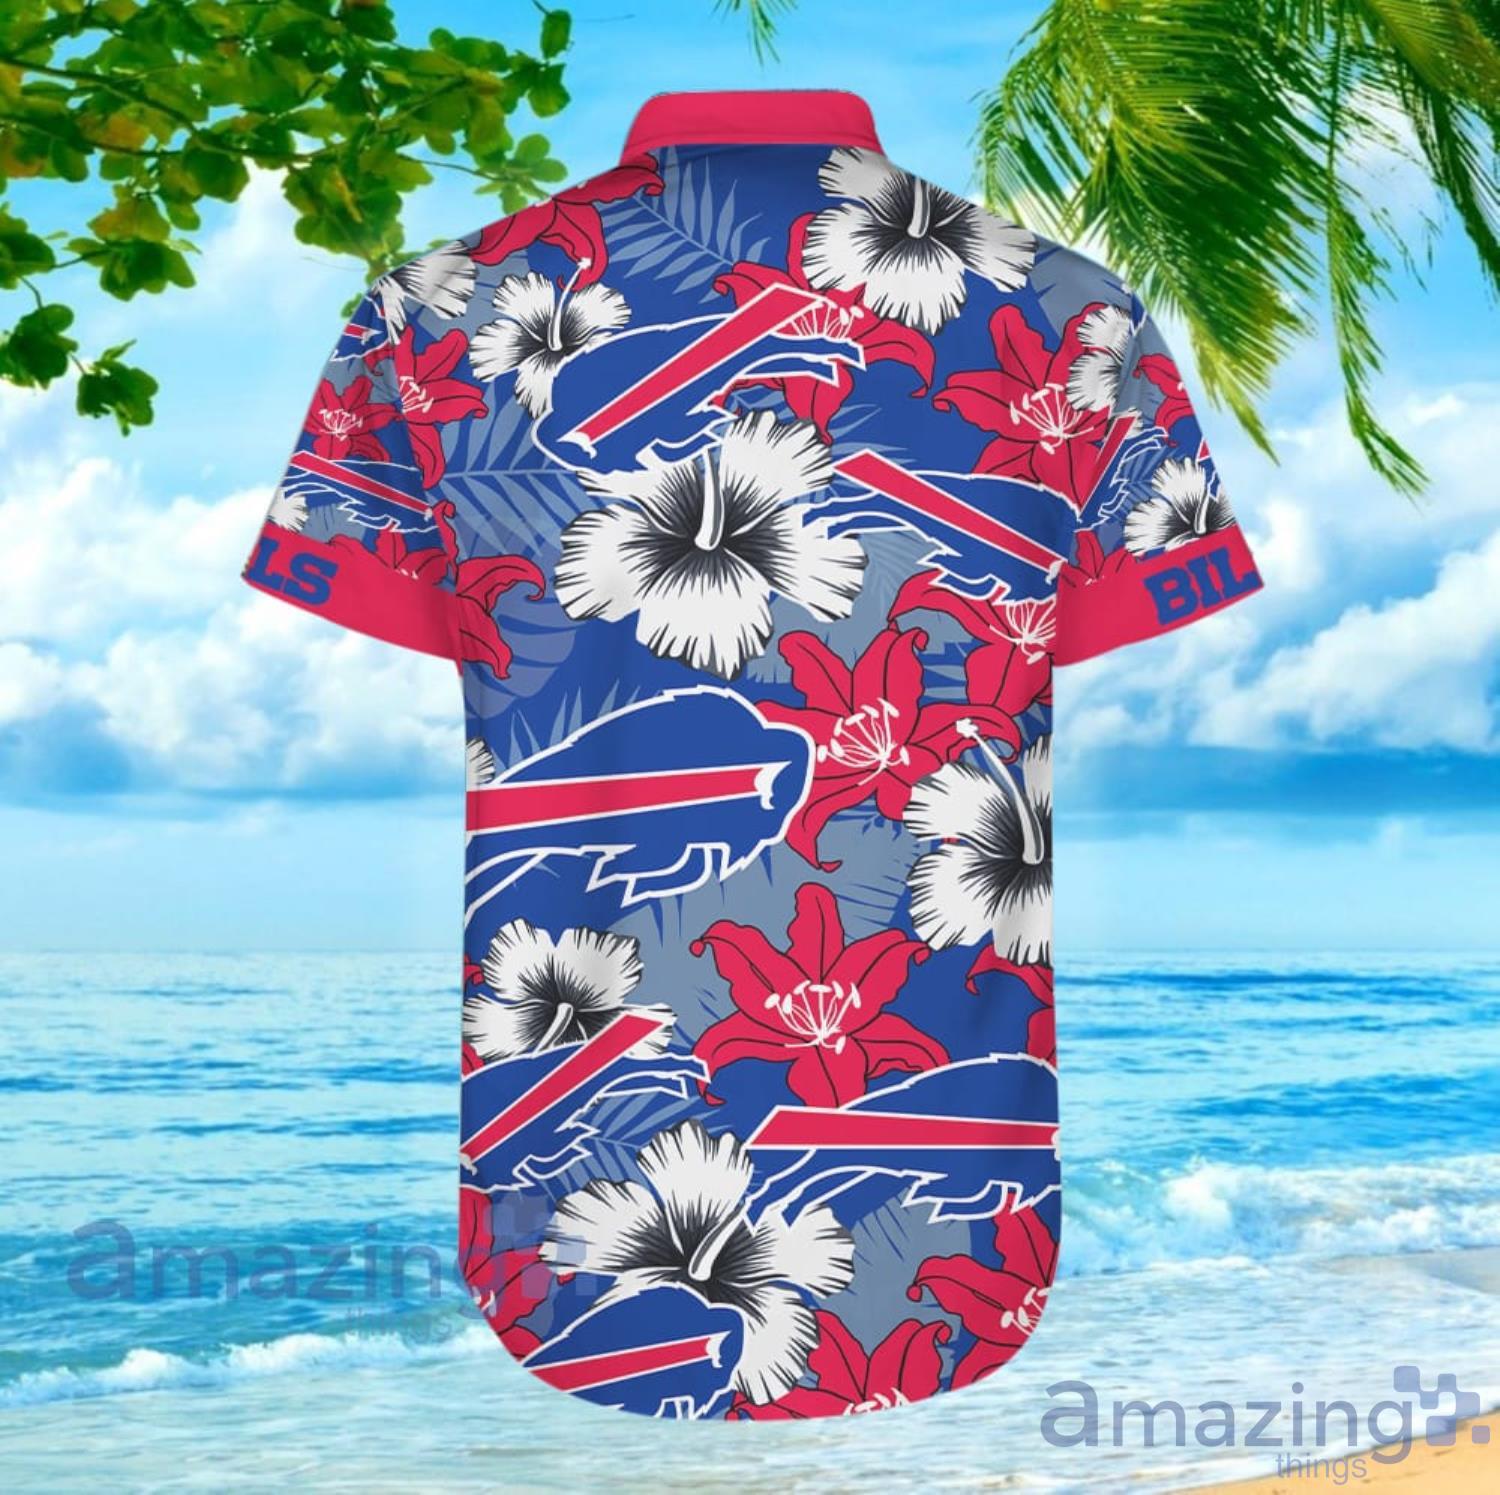 Buffalo Bills NFL Football Team Hawaiian Shirt For Men And Women